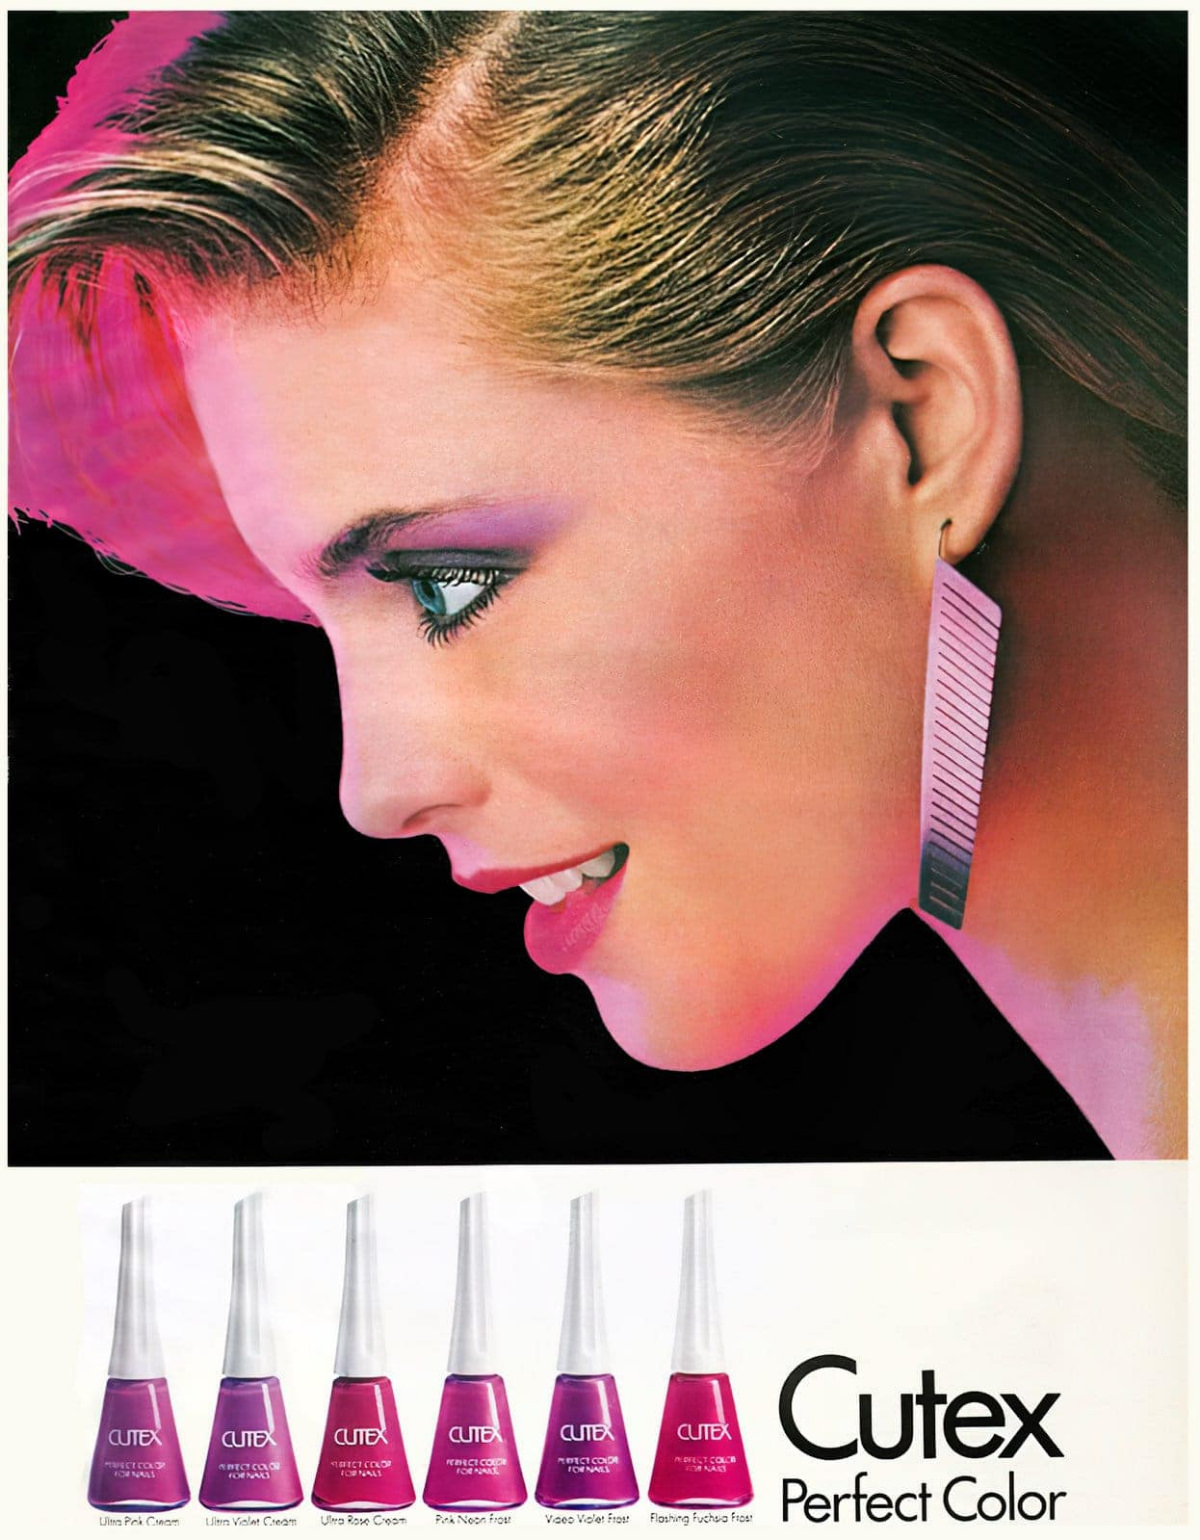 Cutex pink nail polishes, 1980s.